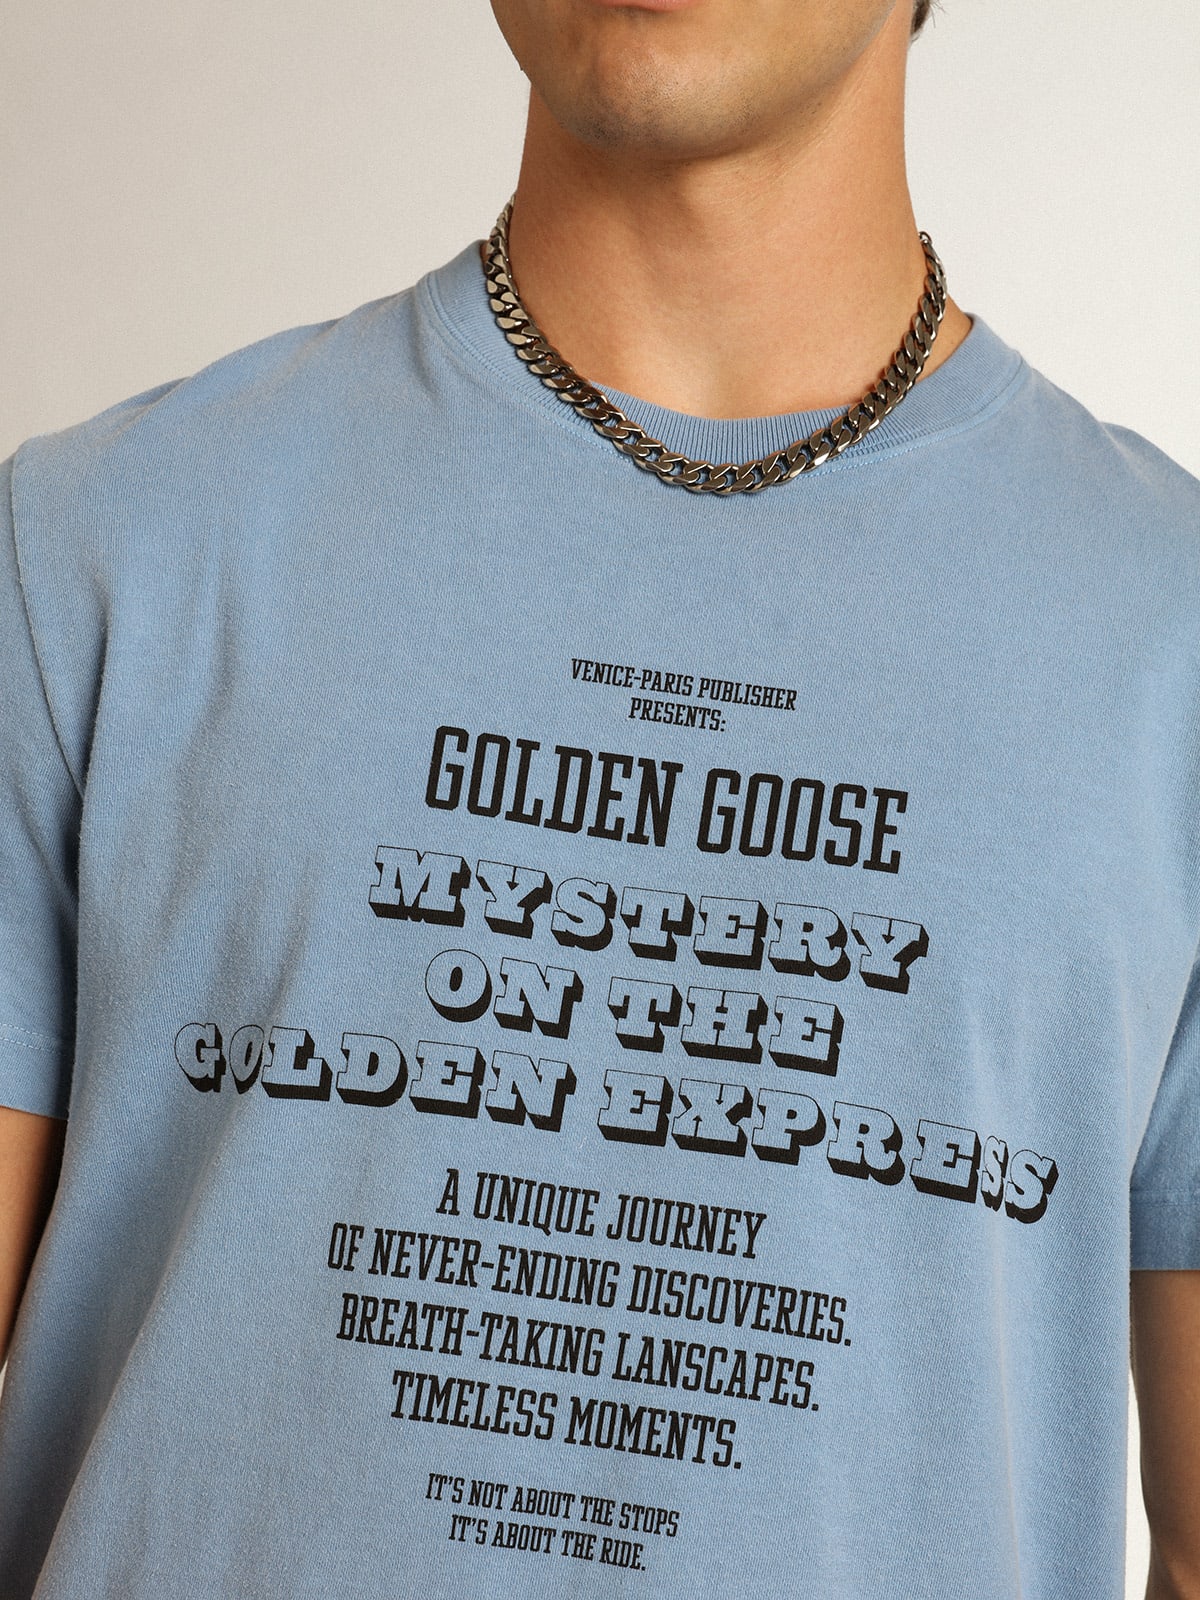 Golden Goose - T-shirt collection Journey bleu port avec imprimé Golden Goose Mystery On The Golden Express noir contrasté sur le devant in 